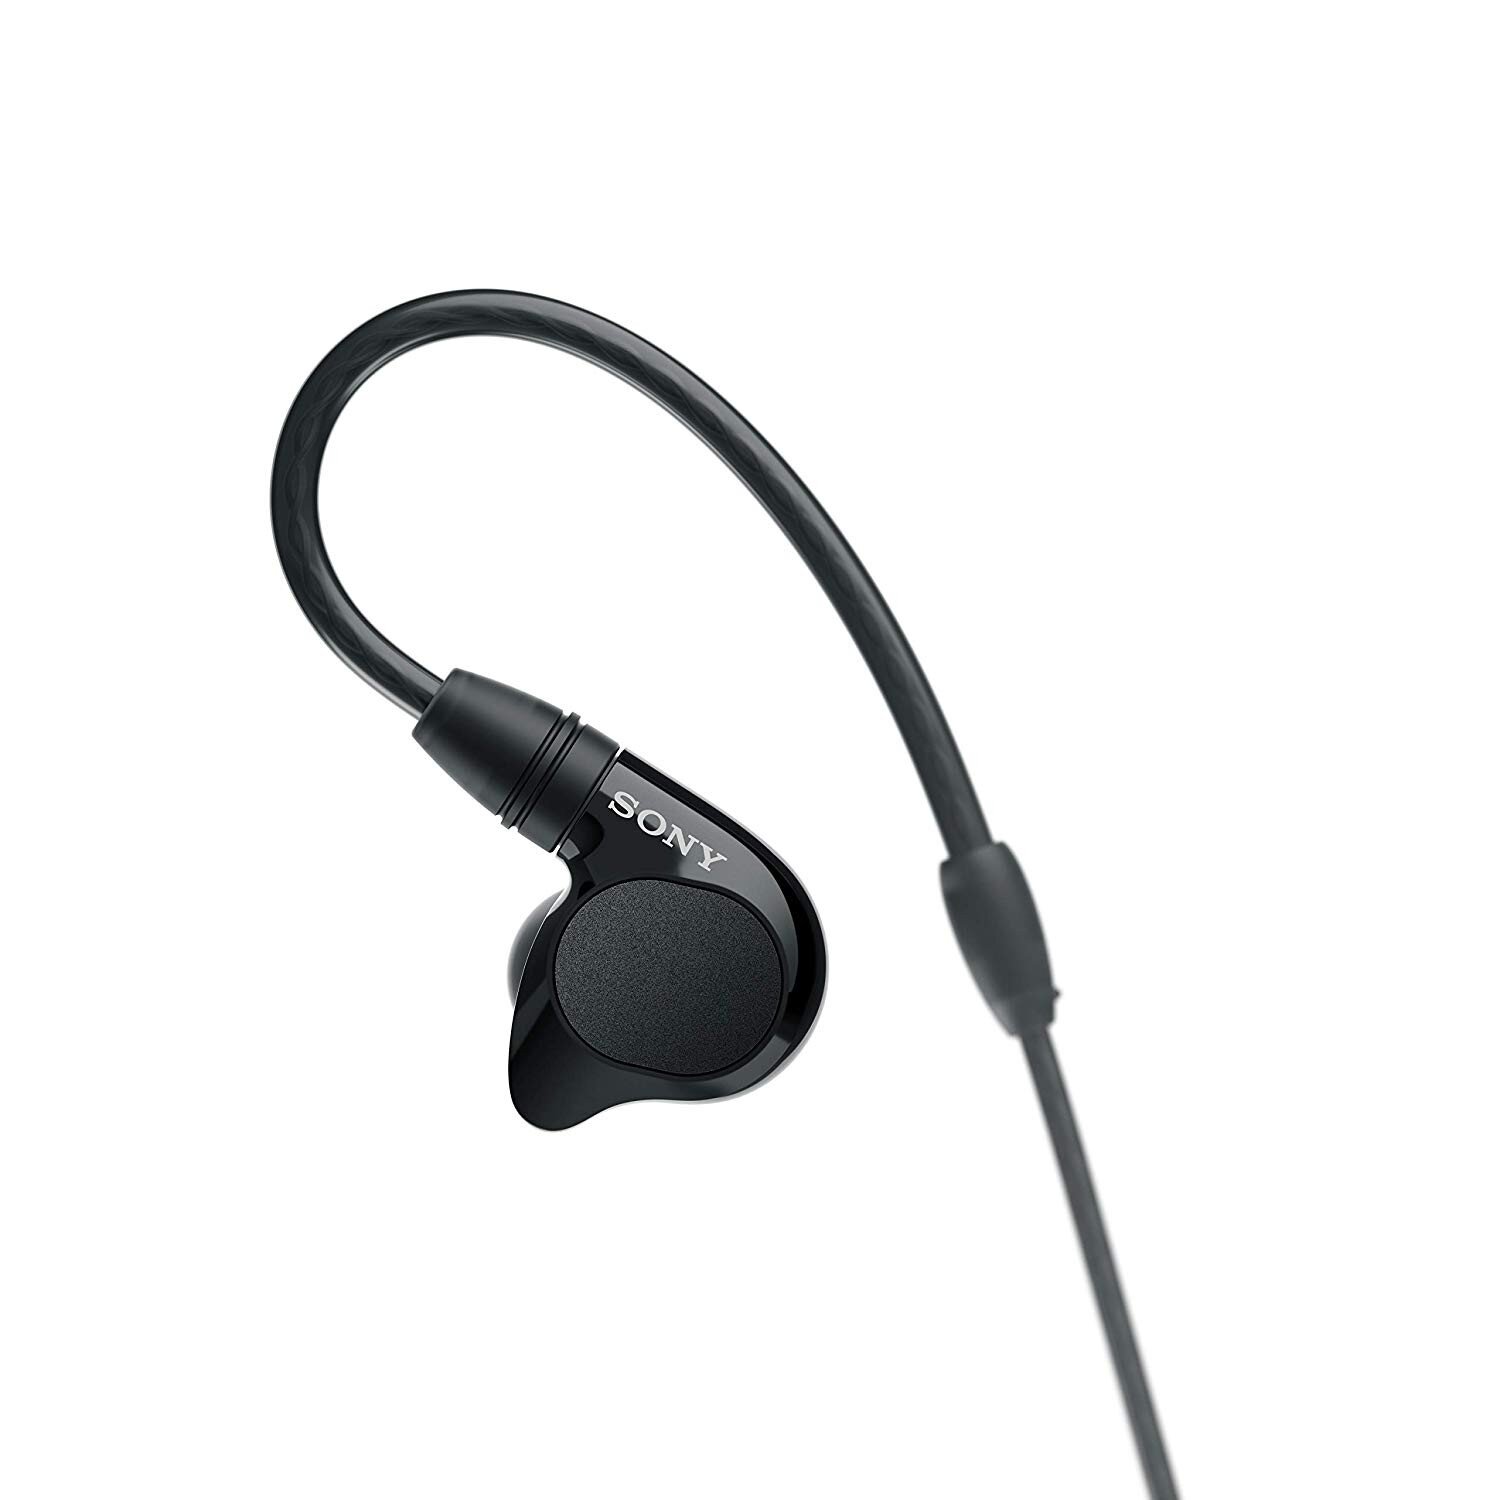 Buy Sony IER-M7 In-Ear Monitors online Worldwide - Tejar.com